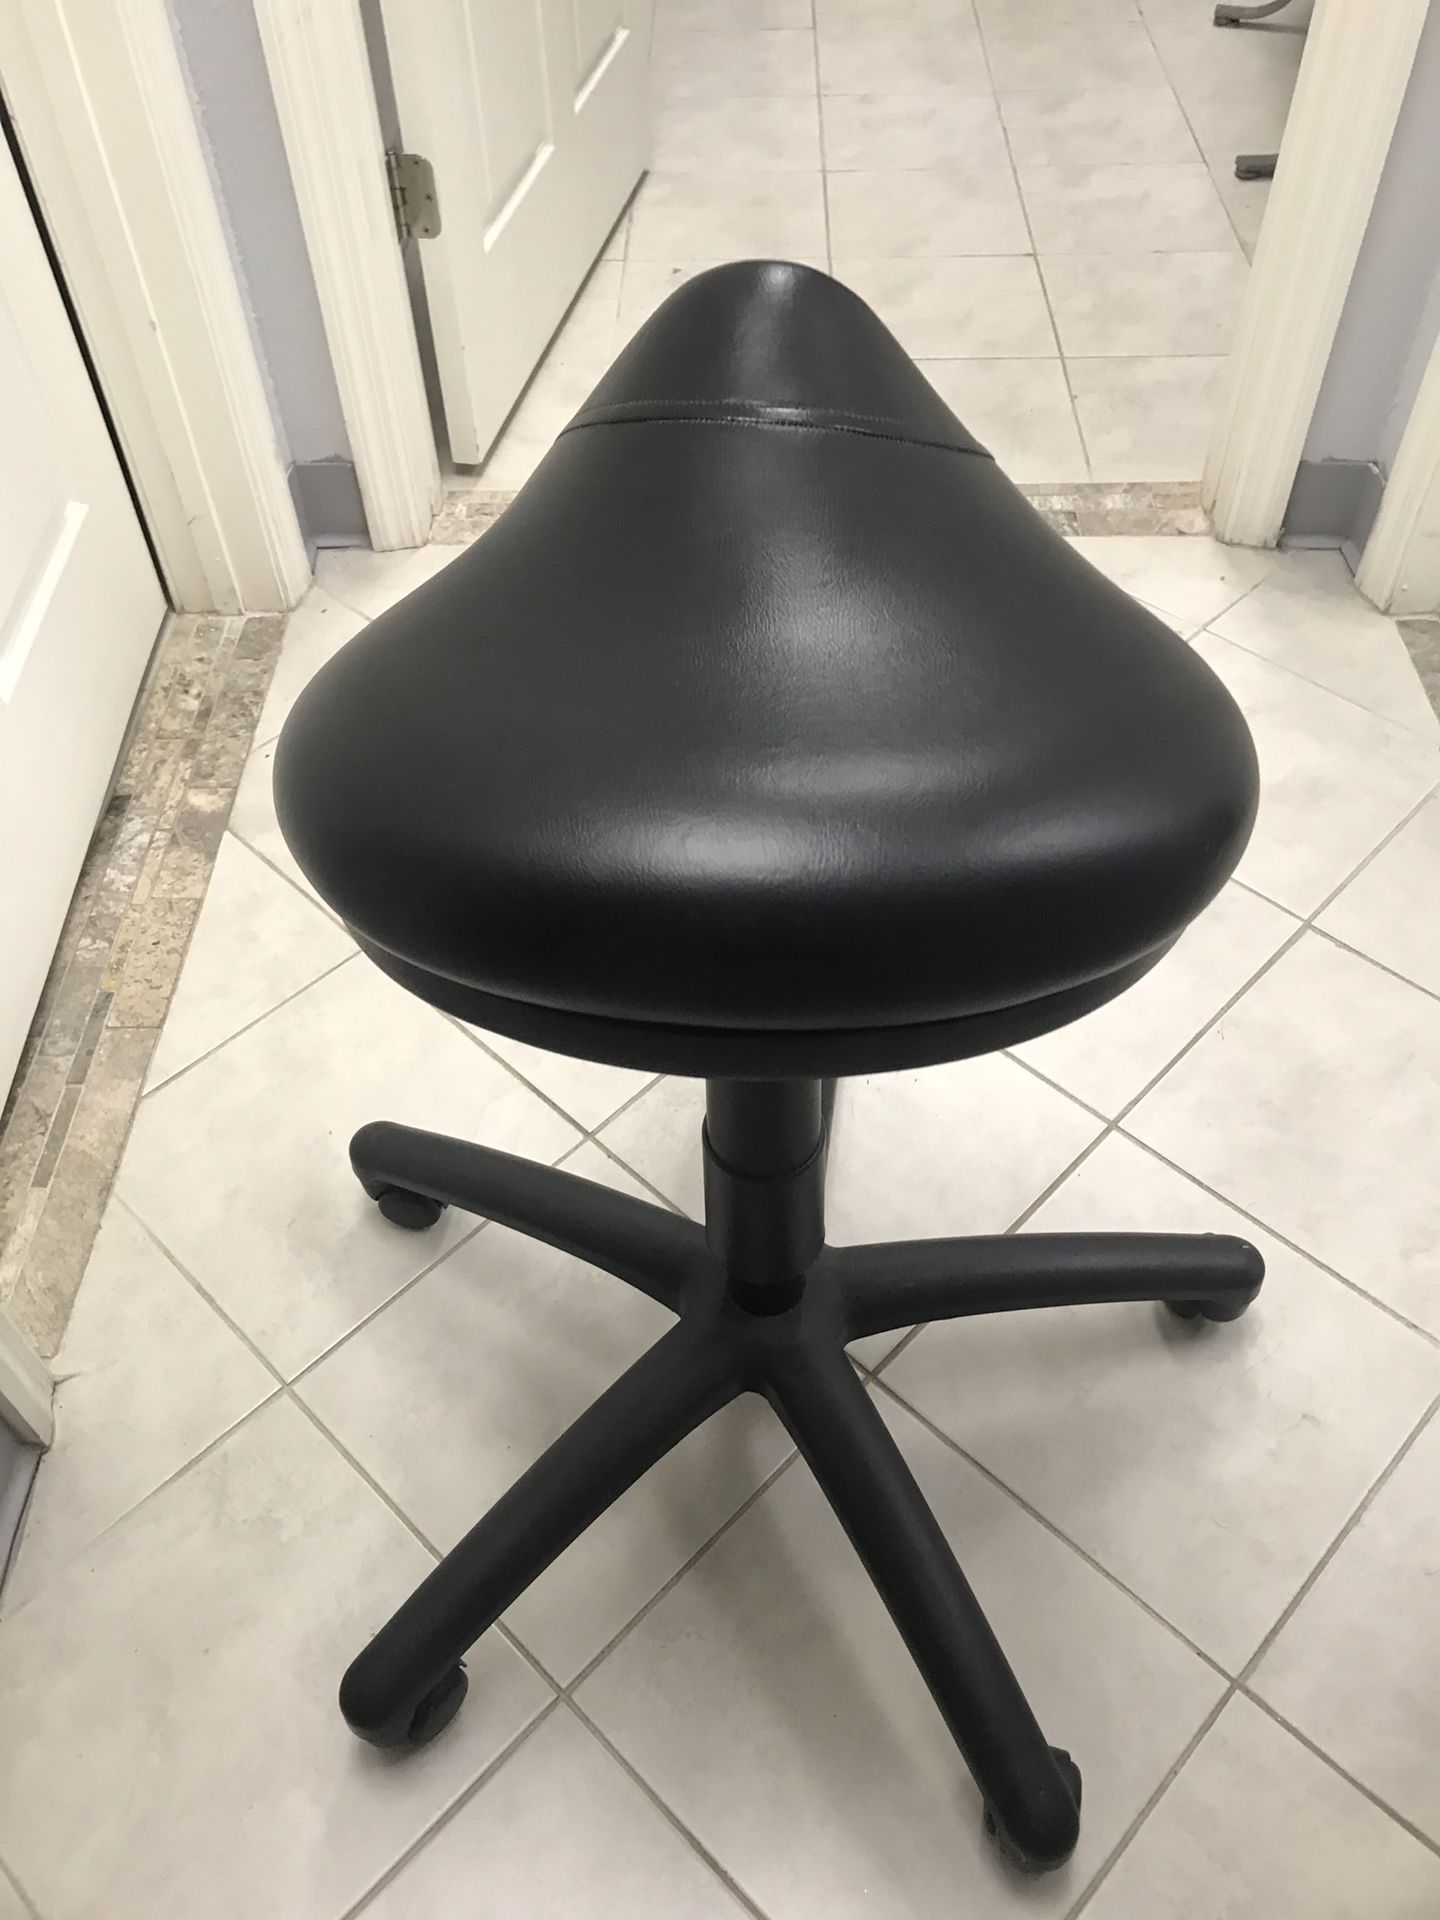 Higher level saddle stool